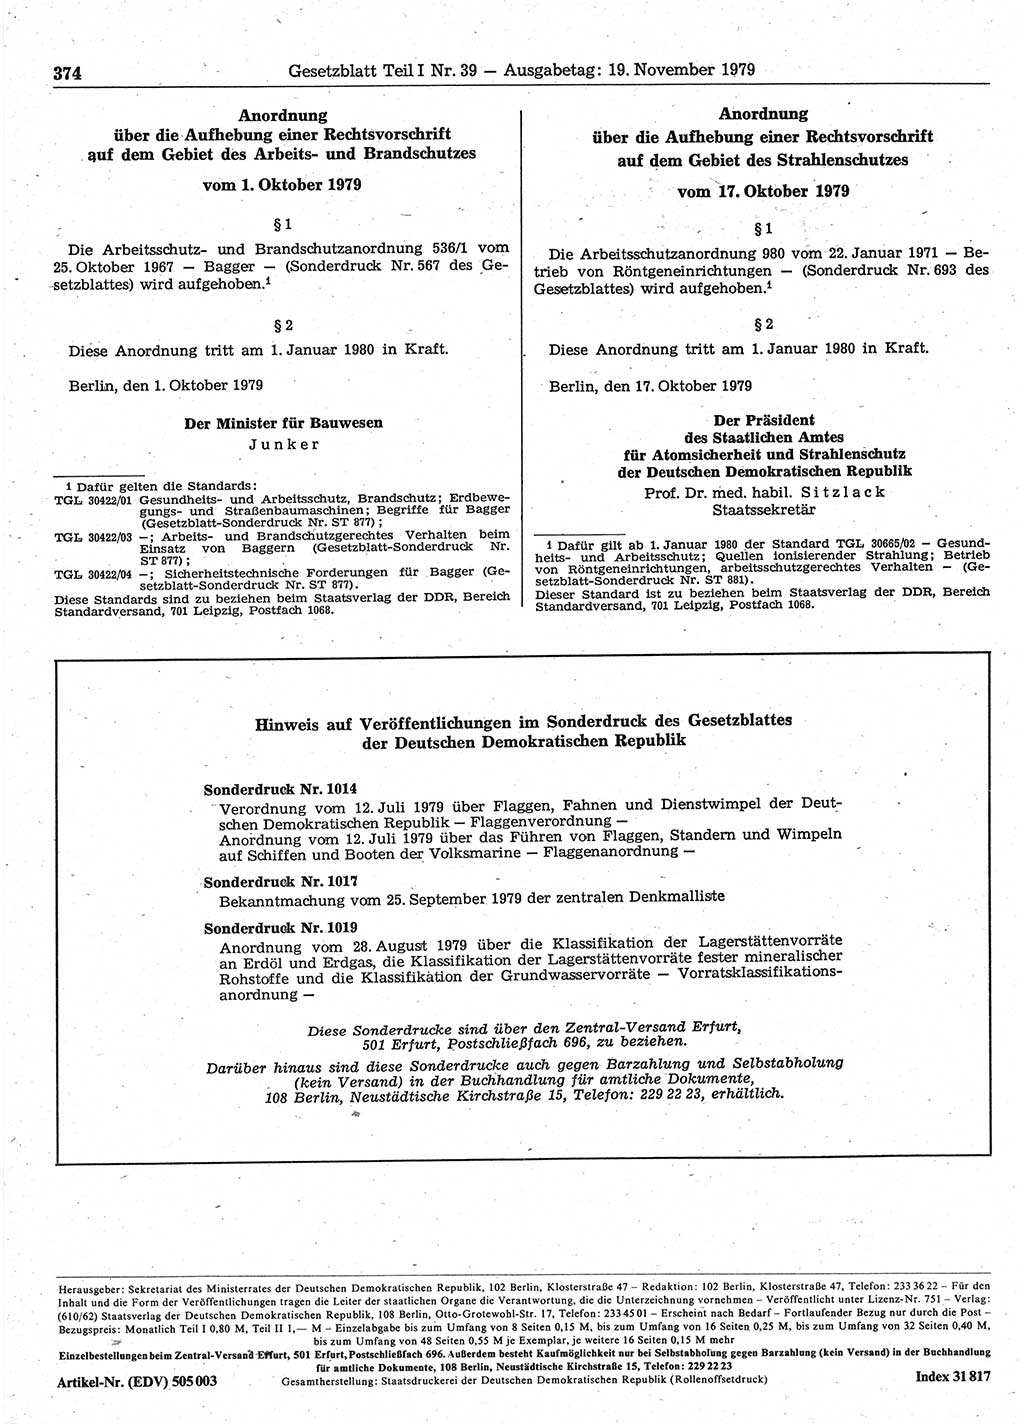 Gesetzblatt (GBl.) der Deutschen Demokratischen Republik (DDR) Teil Ⅰ 1979, Seite 374 (GBl. DDR Ⅰ 1979, S. 374)